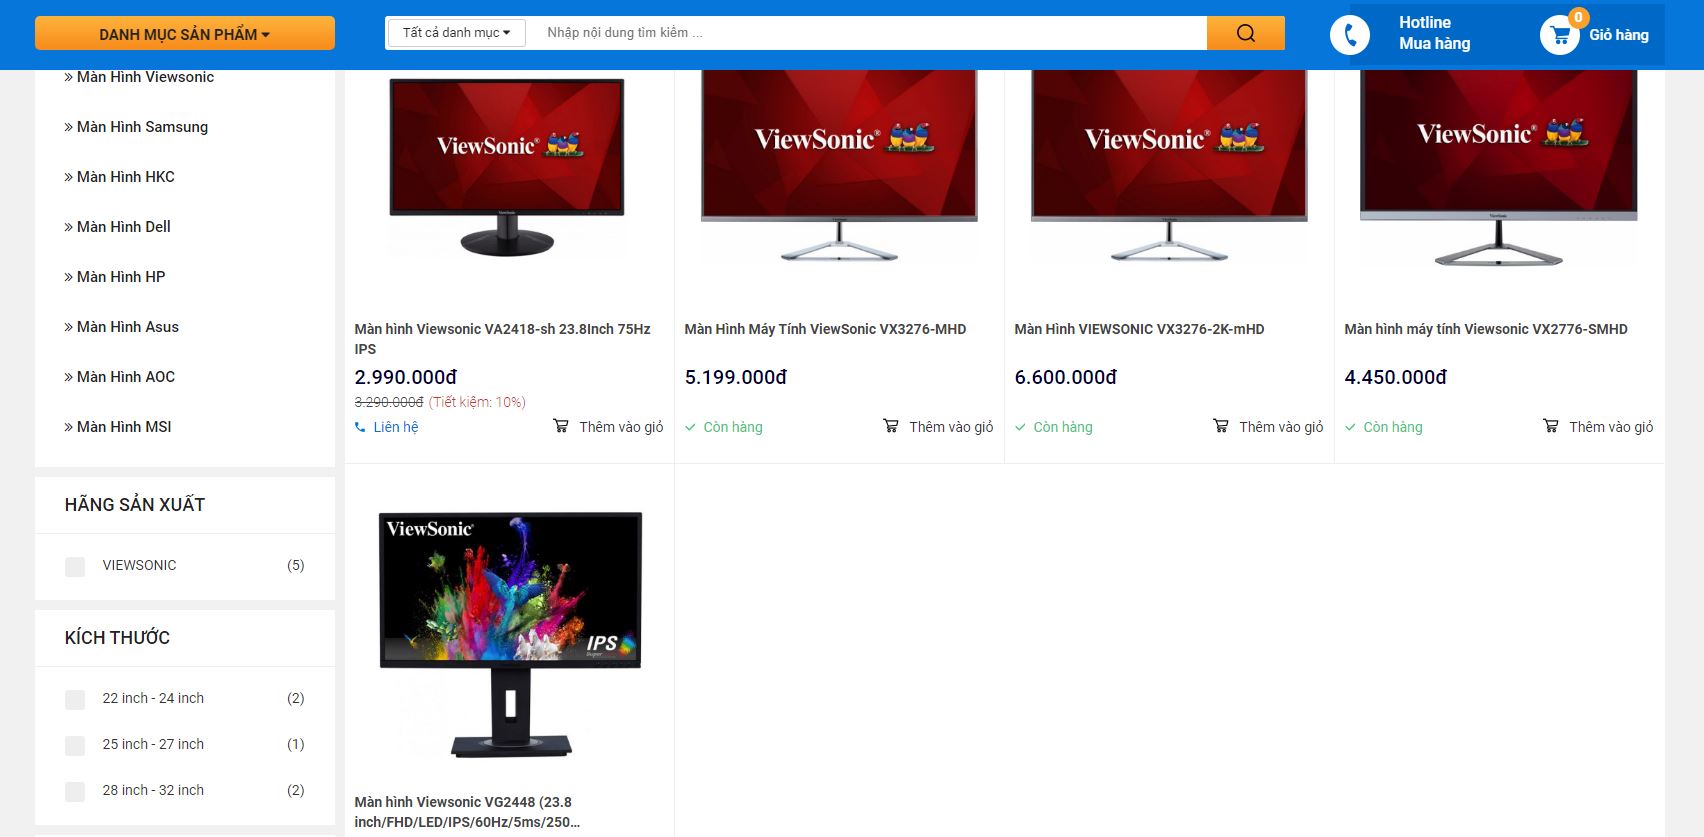 Hoàng Hà PC - Cung cấp màn hình Viewsonic chất lượng nhất đến cho bạn